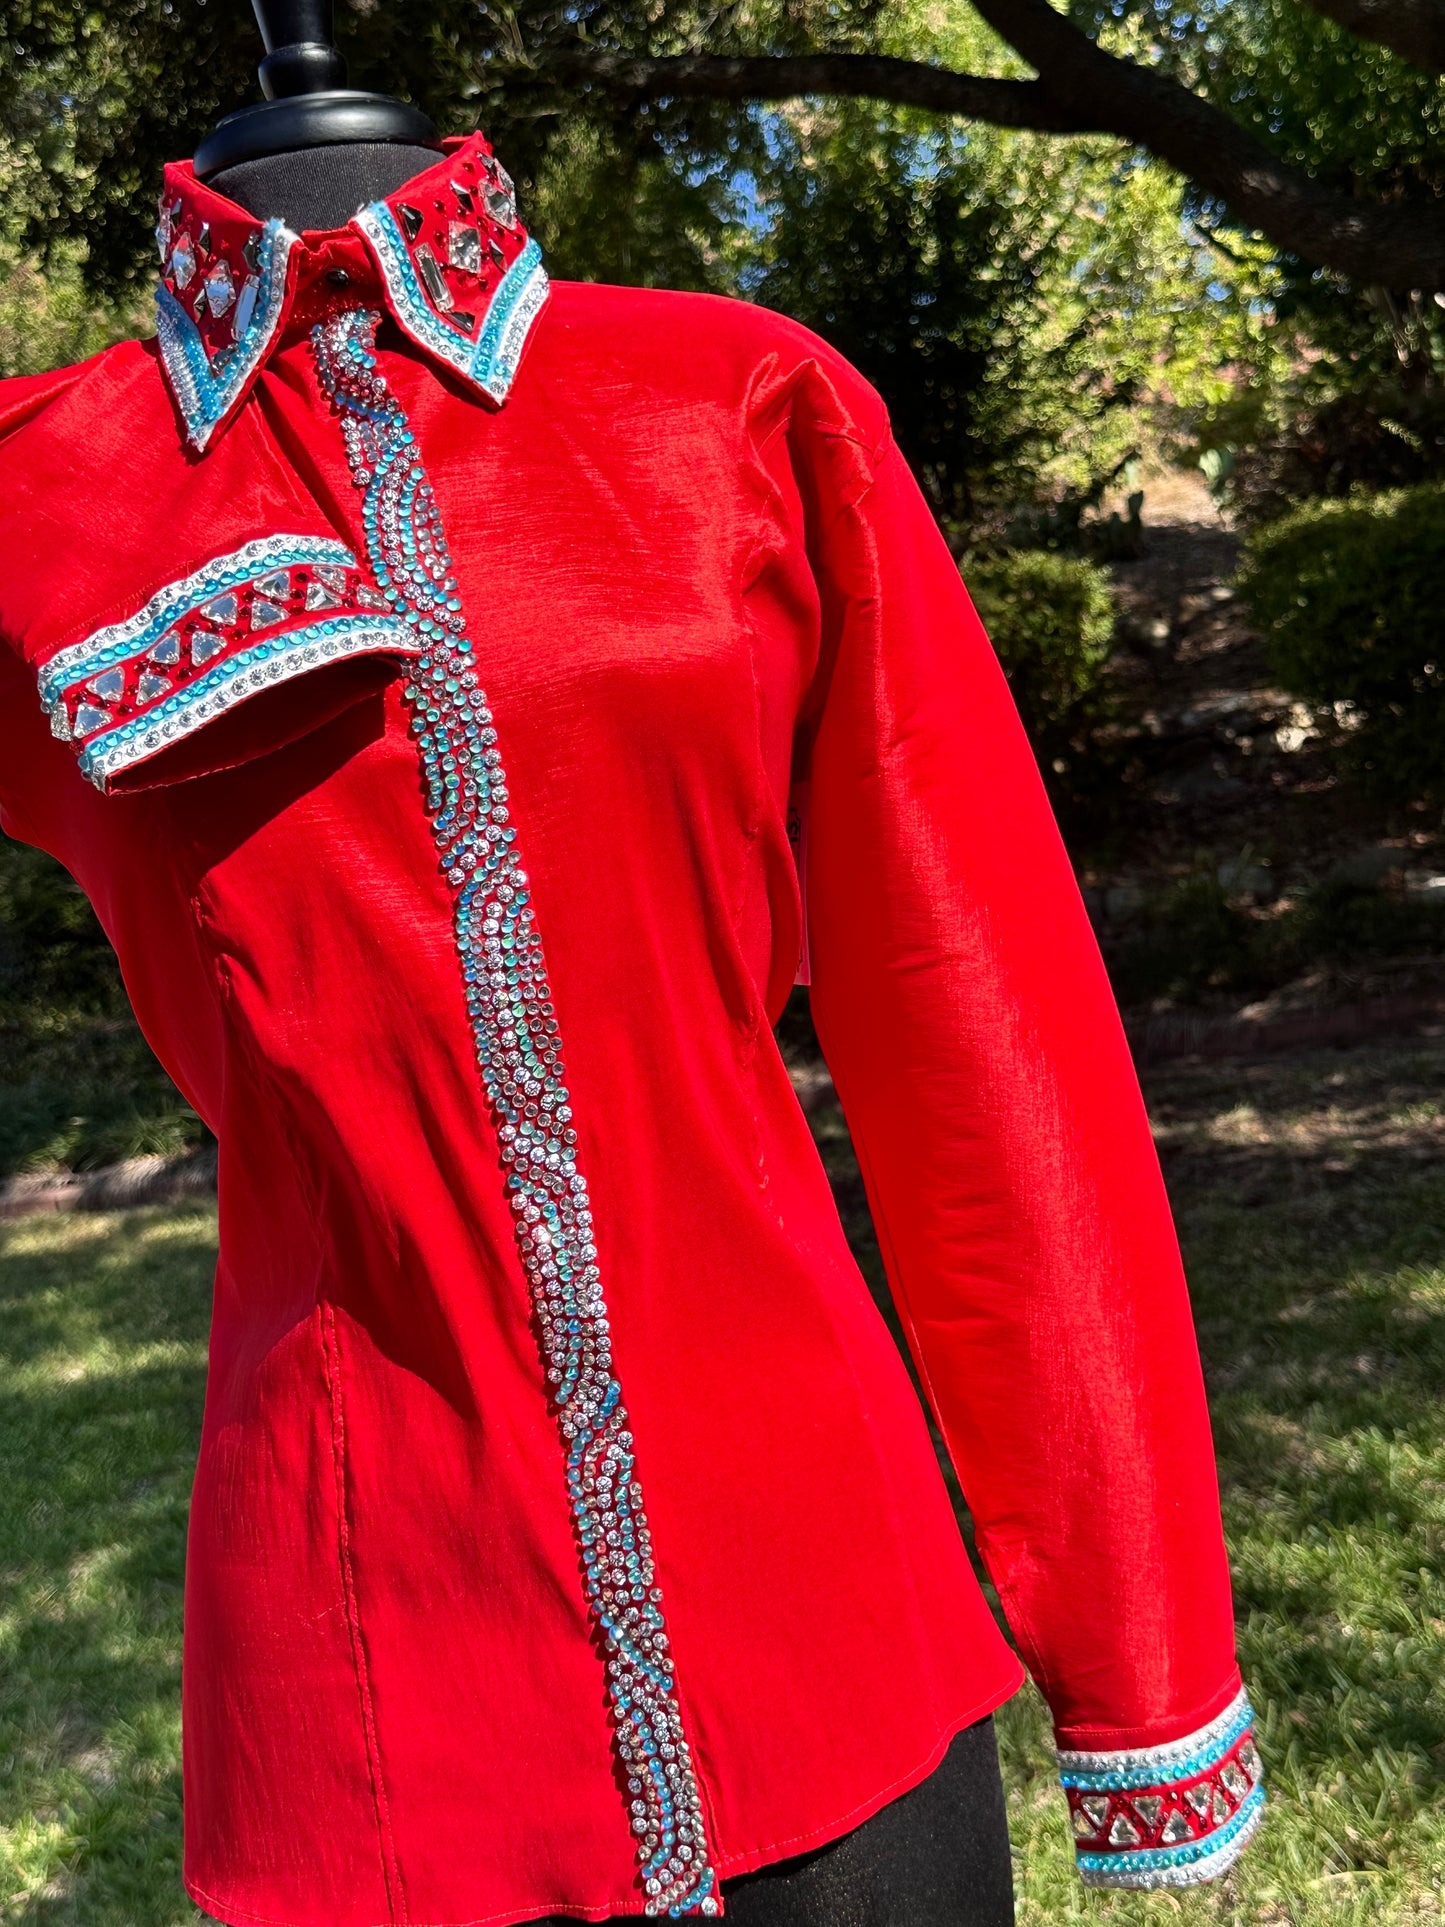 Size XXL Day Shirt hidden zipper stretch taffeta red and aqua Retro design